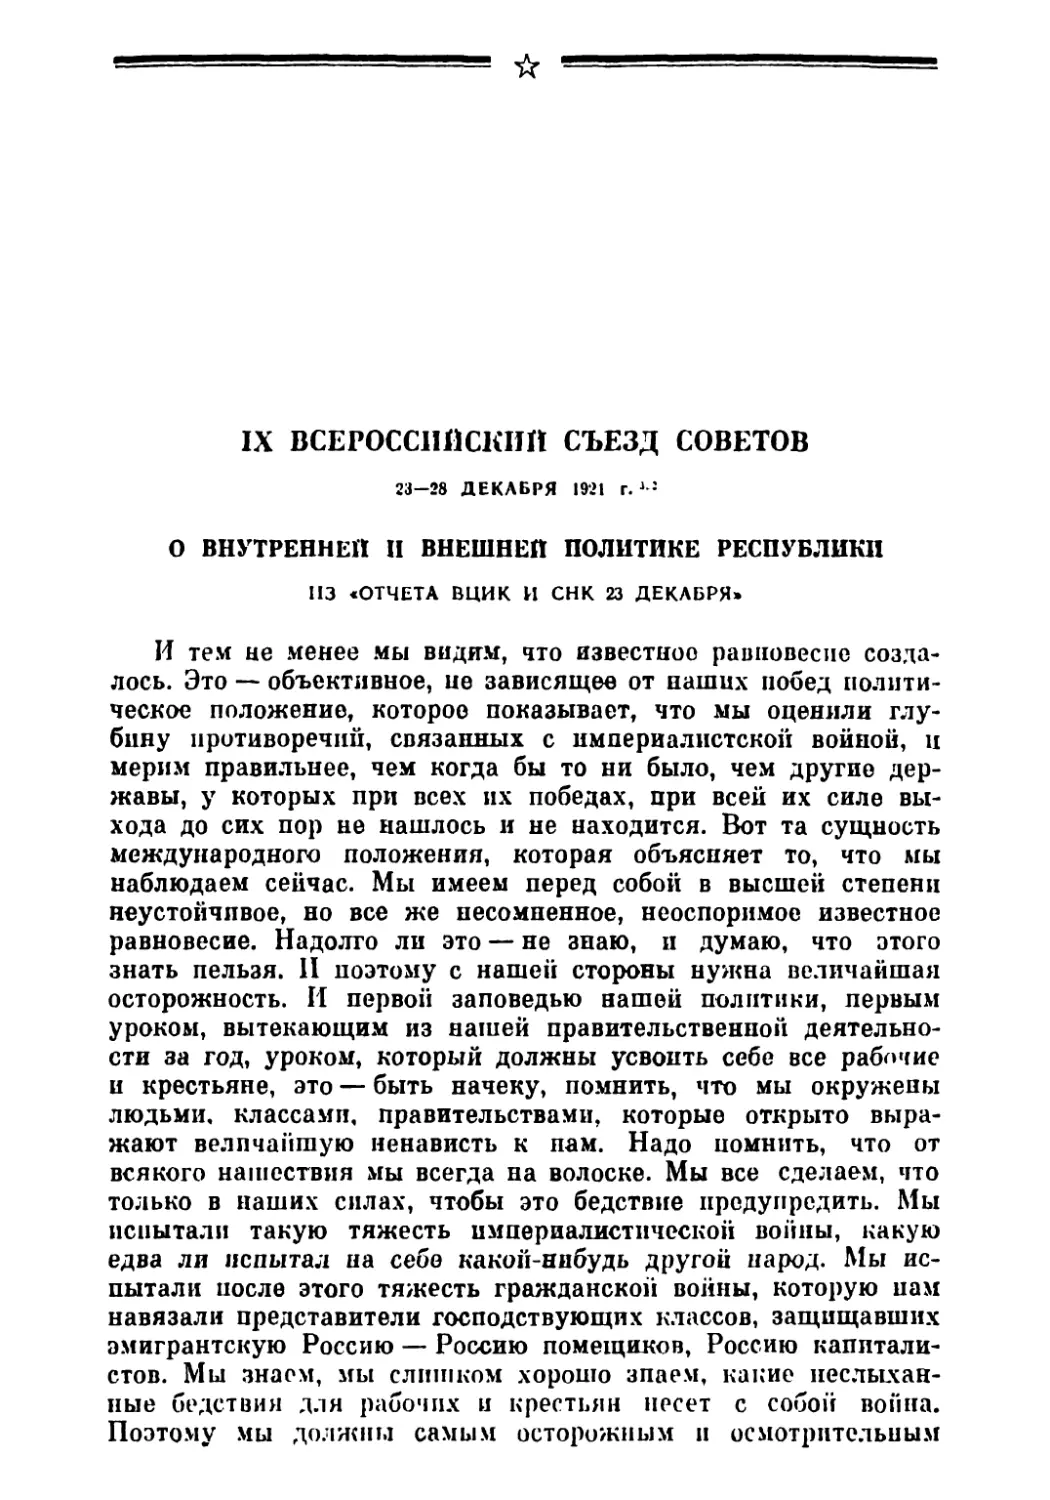 IX Всероссийский съезд Советов 23—28 декабря 1921 г.